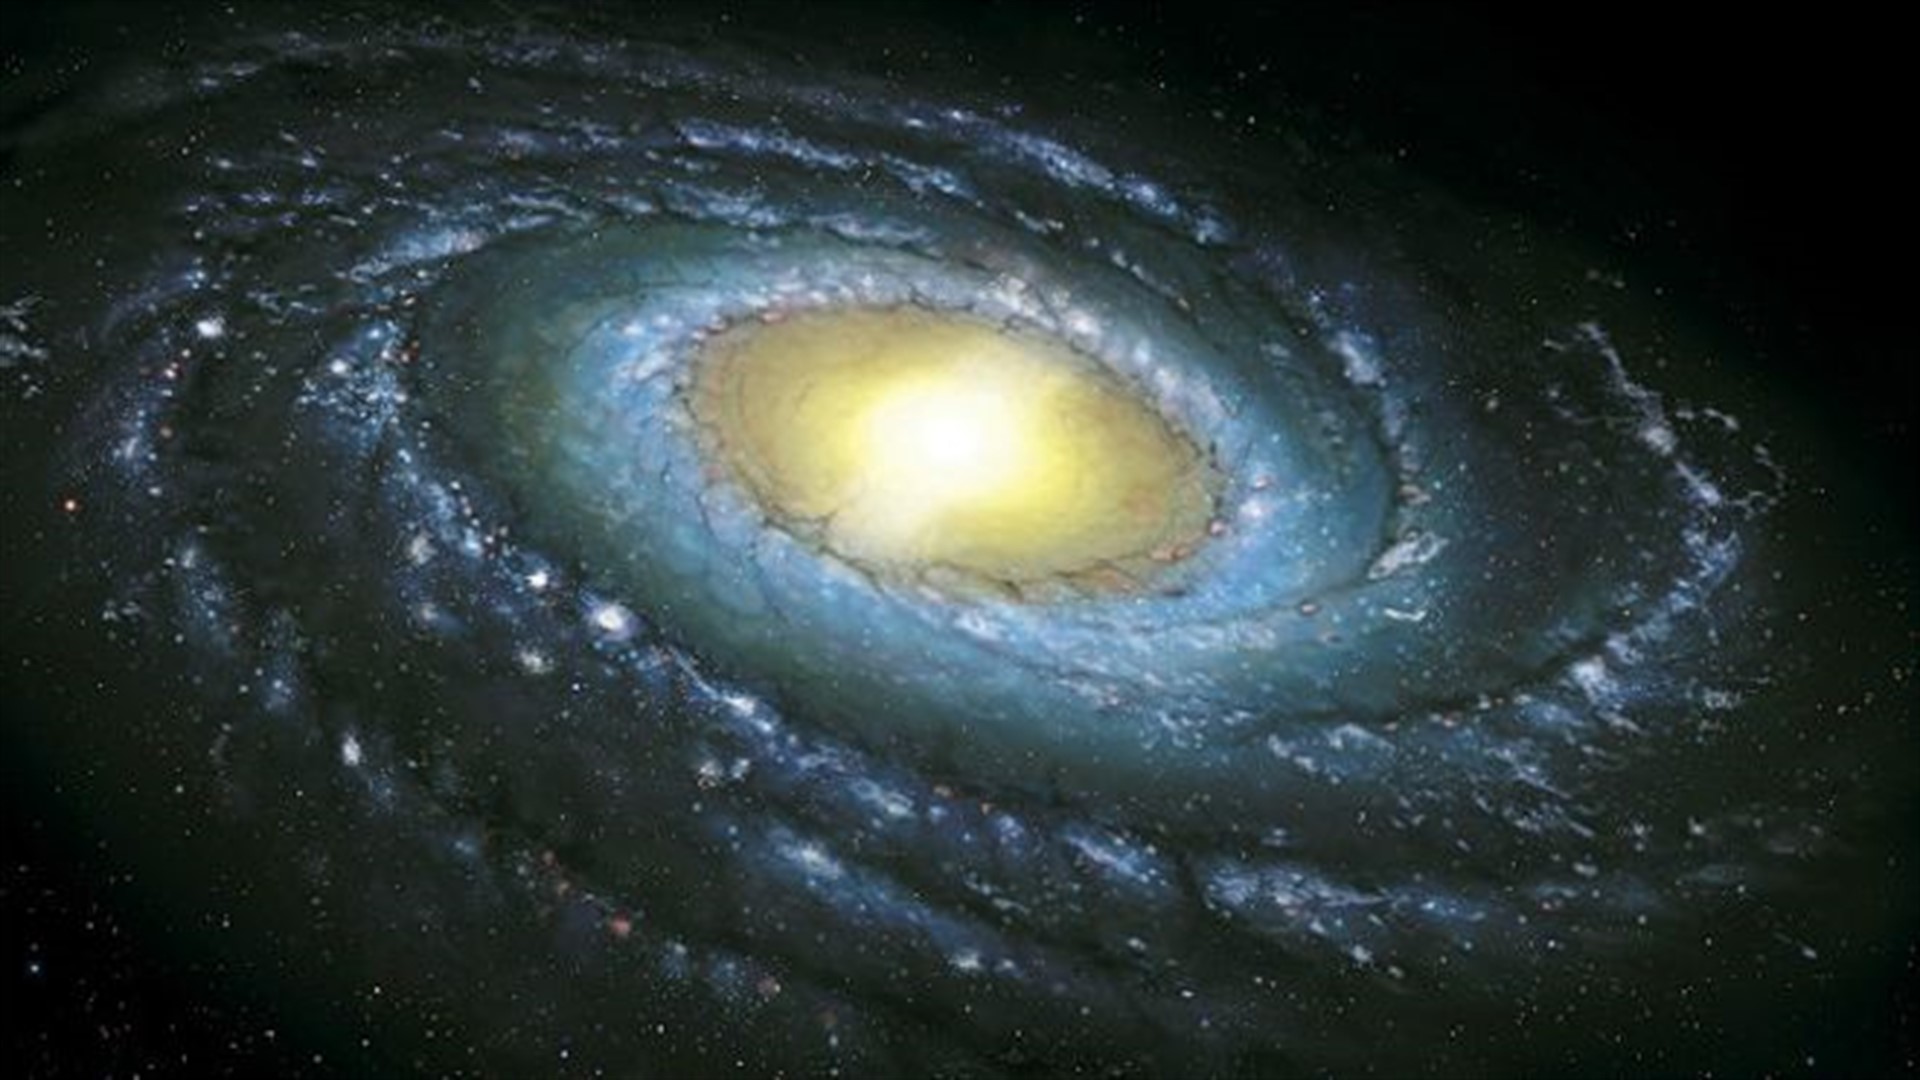 Местоположение солнца. Наша Галактика Млечный путь. Галактика Млечный путь Солнечная система. Наша Солнечная система в галактике Млечный путь. Солнце в галактике Млечный путь.